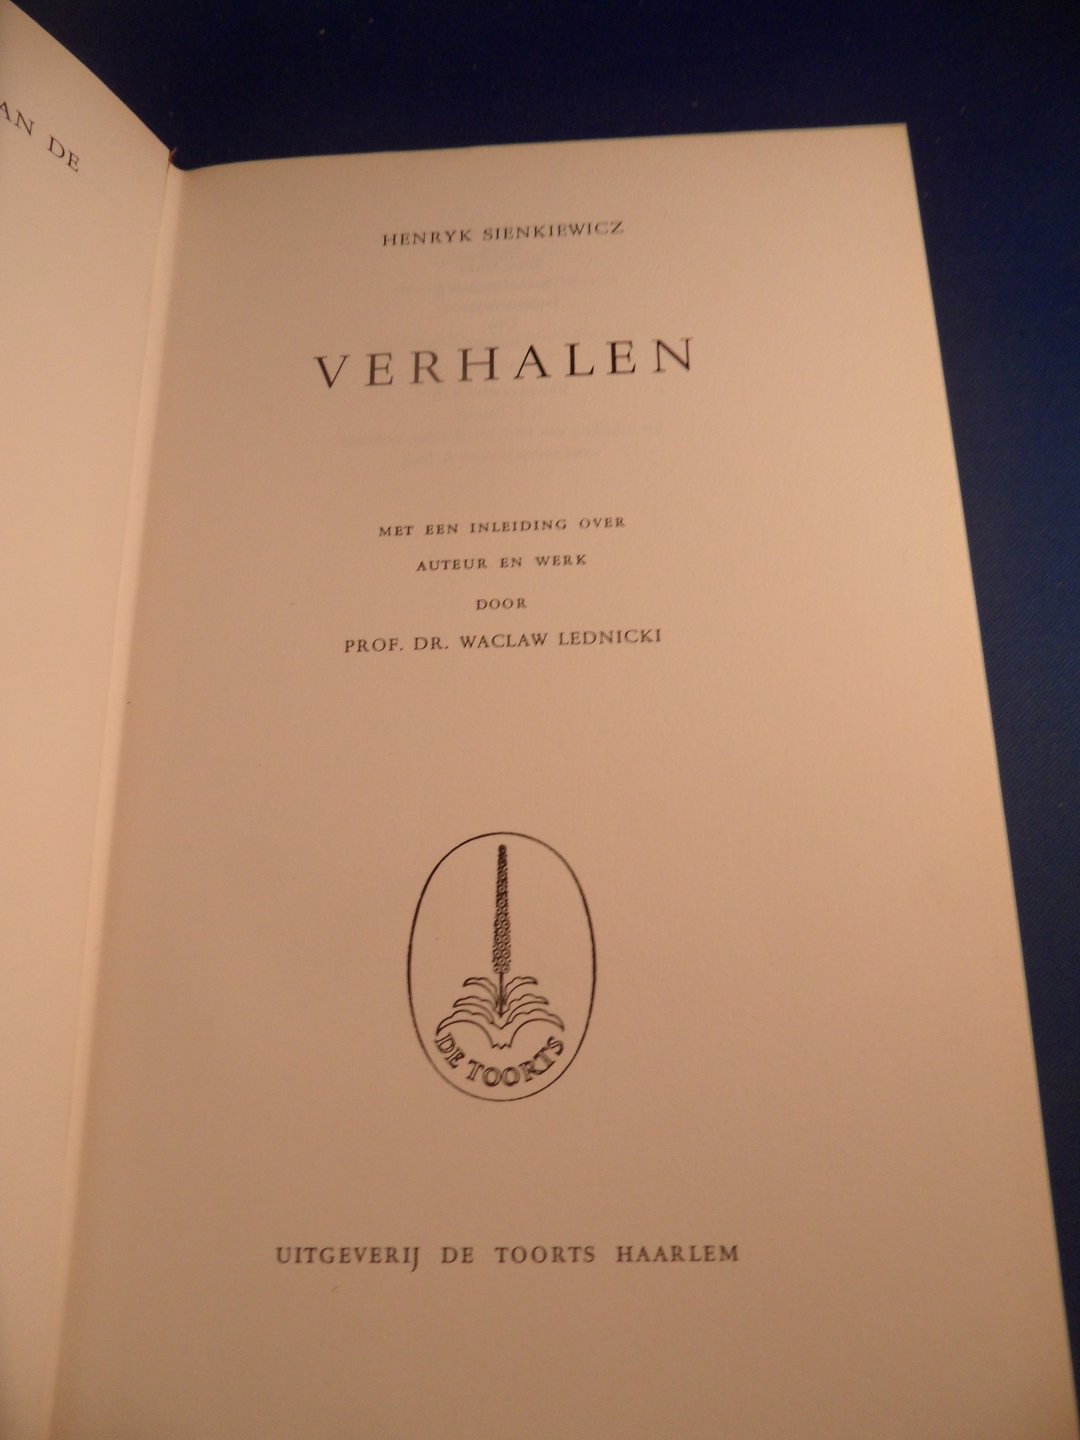 Sienkiewicz, Henryk - Verhalen. Met een inleiding over auteur en werk door prof. dr. Waclaw Lednicki